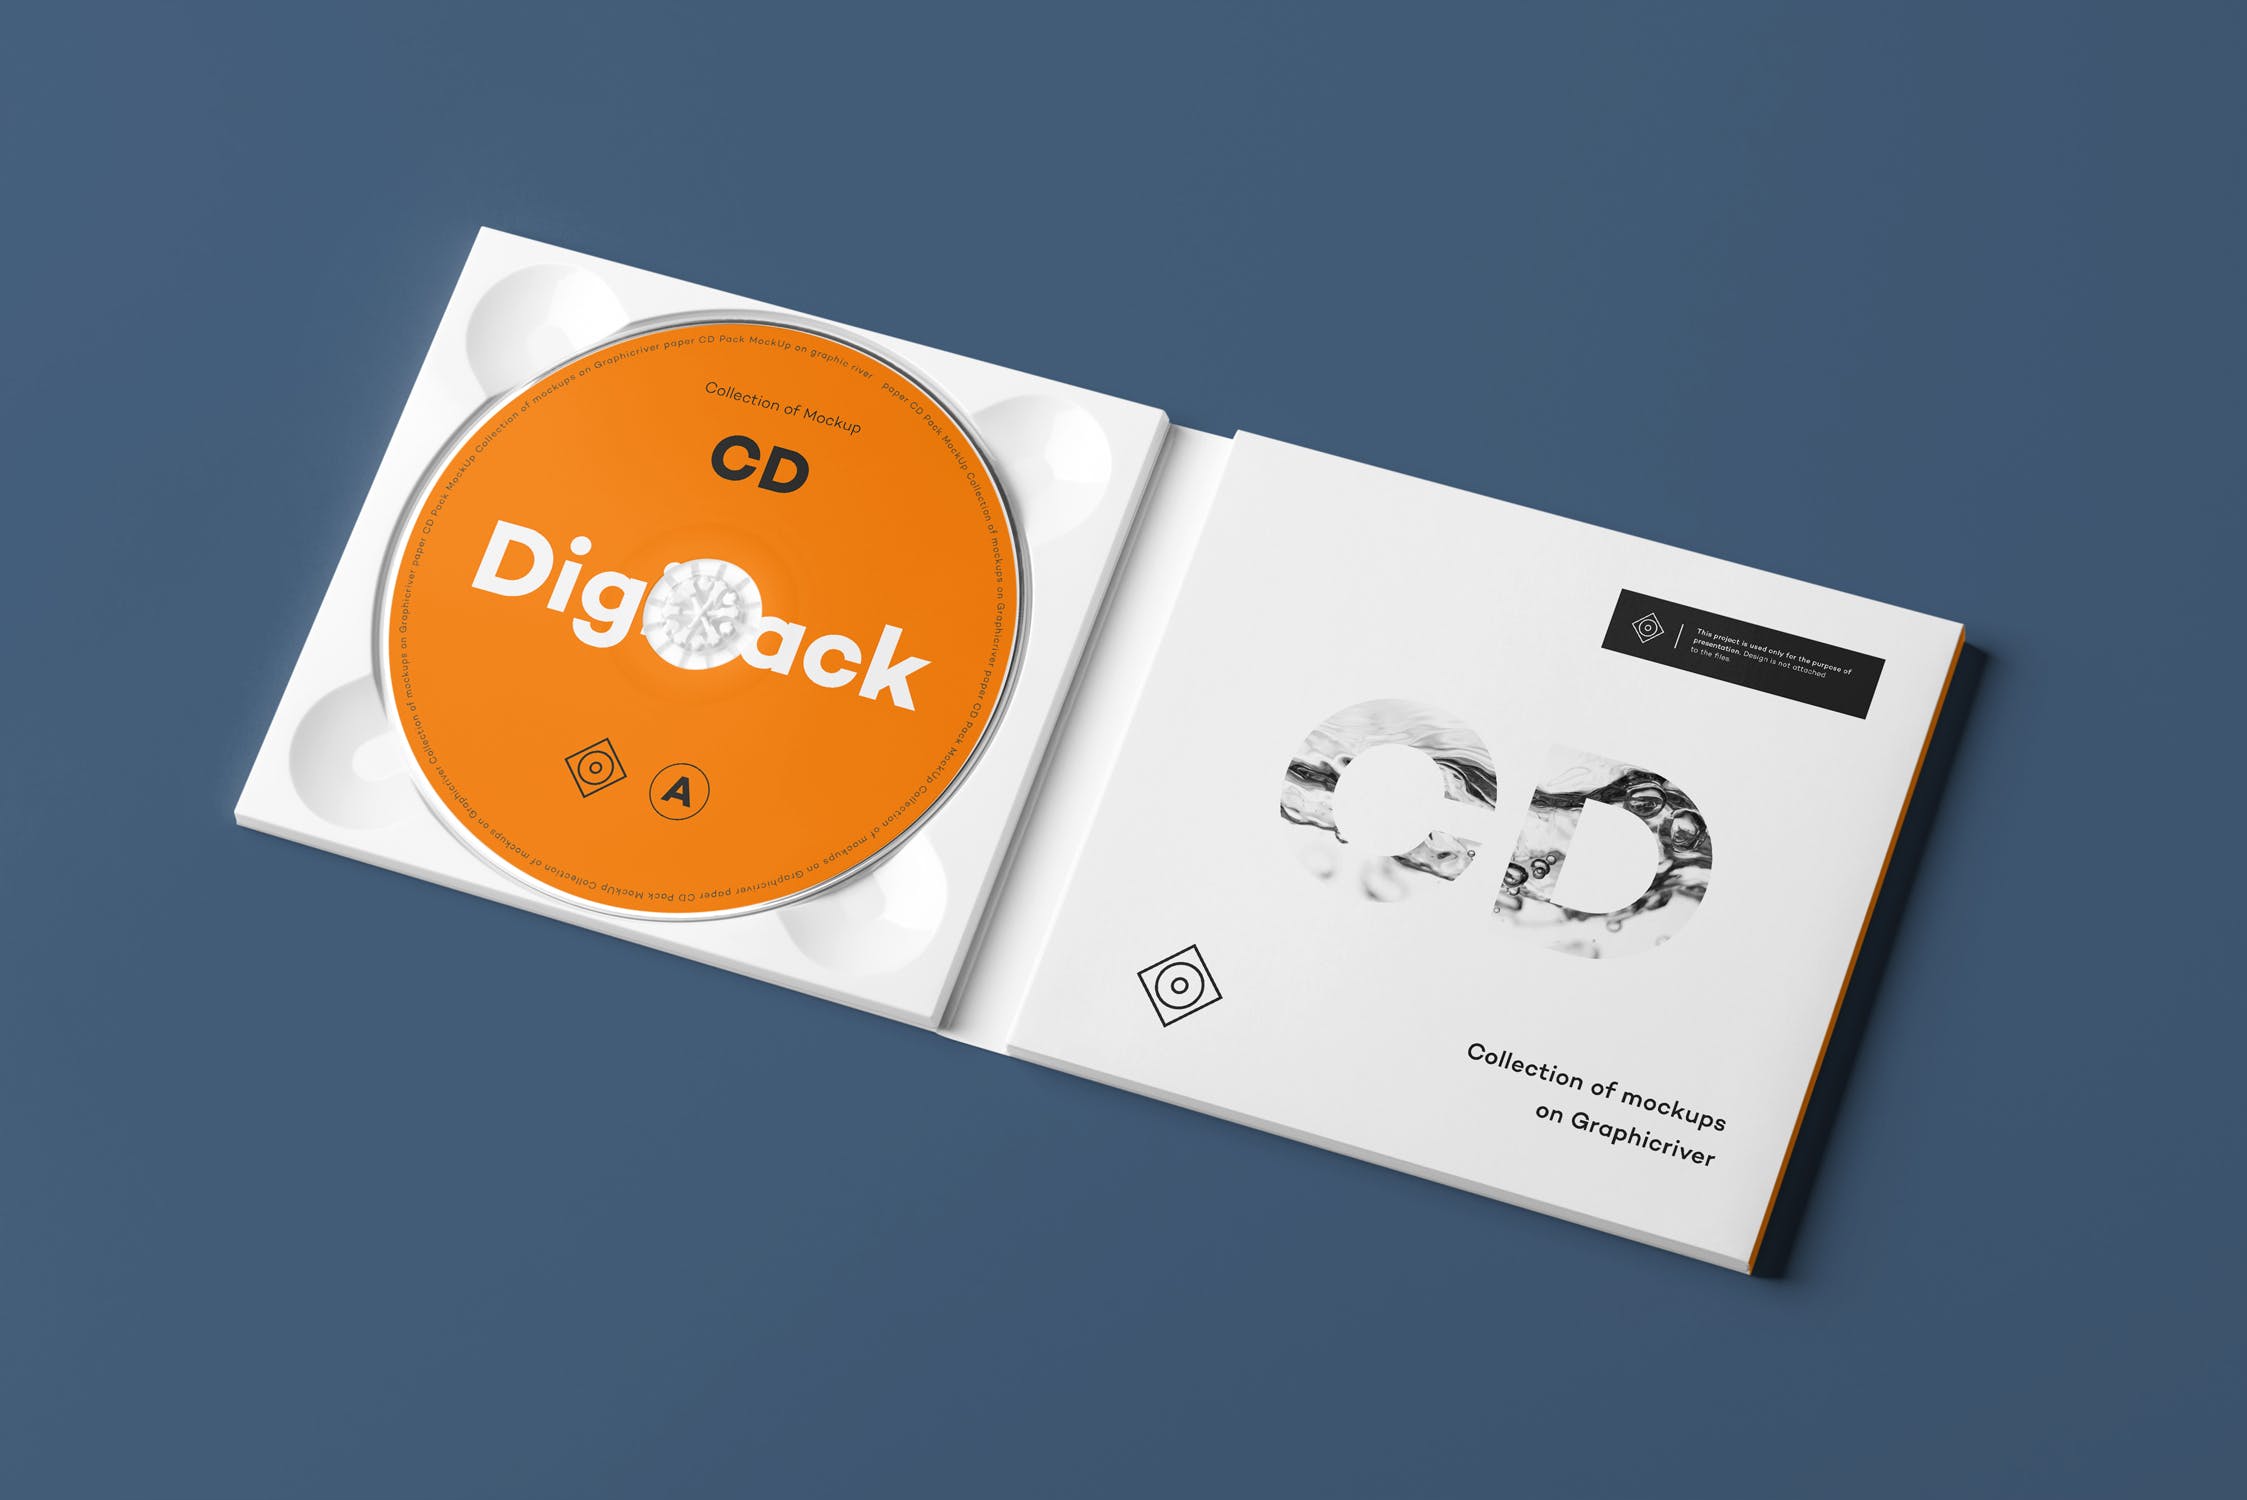 CD光碟封面&包装盒设计图第一素材精选模板v8 CD Digi Pack Mock-up 8插图(8)